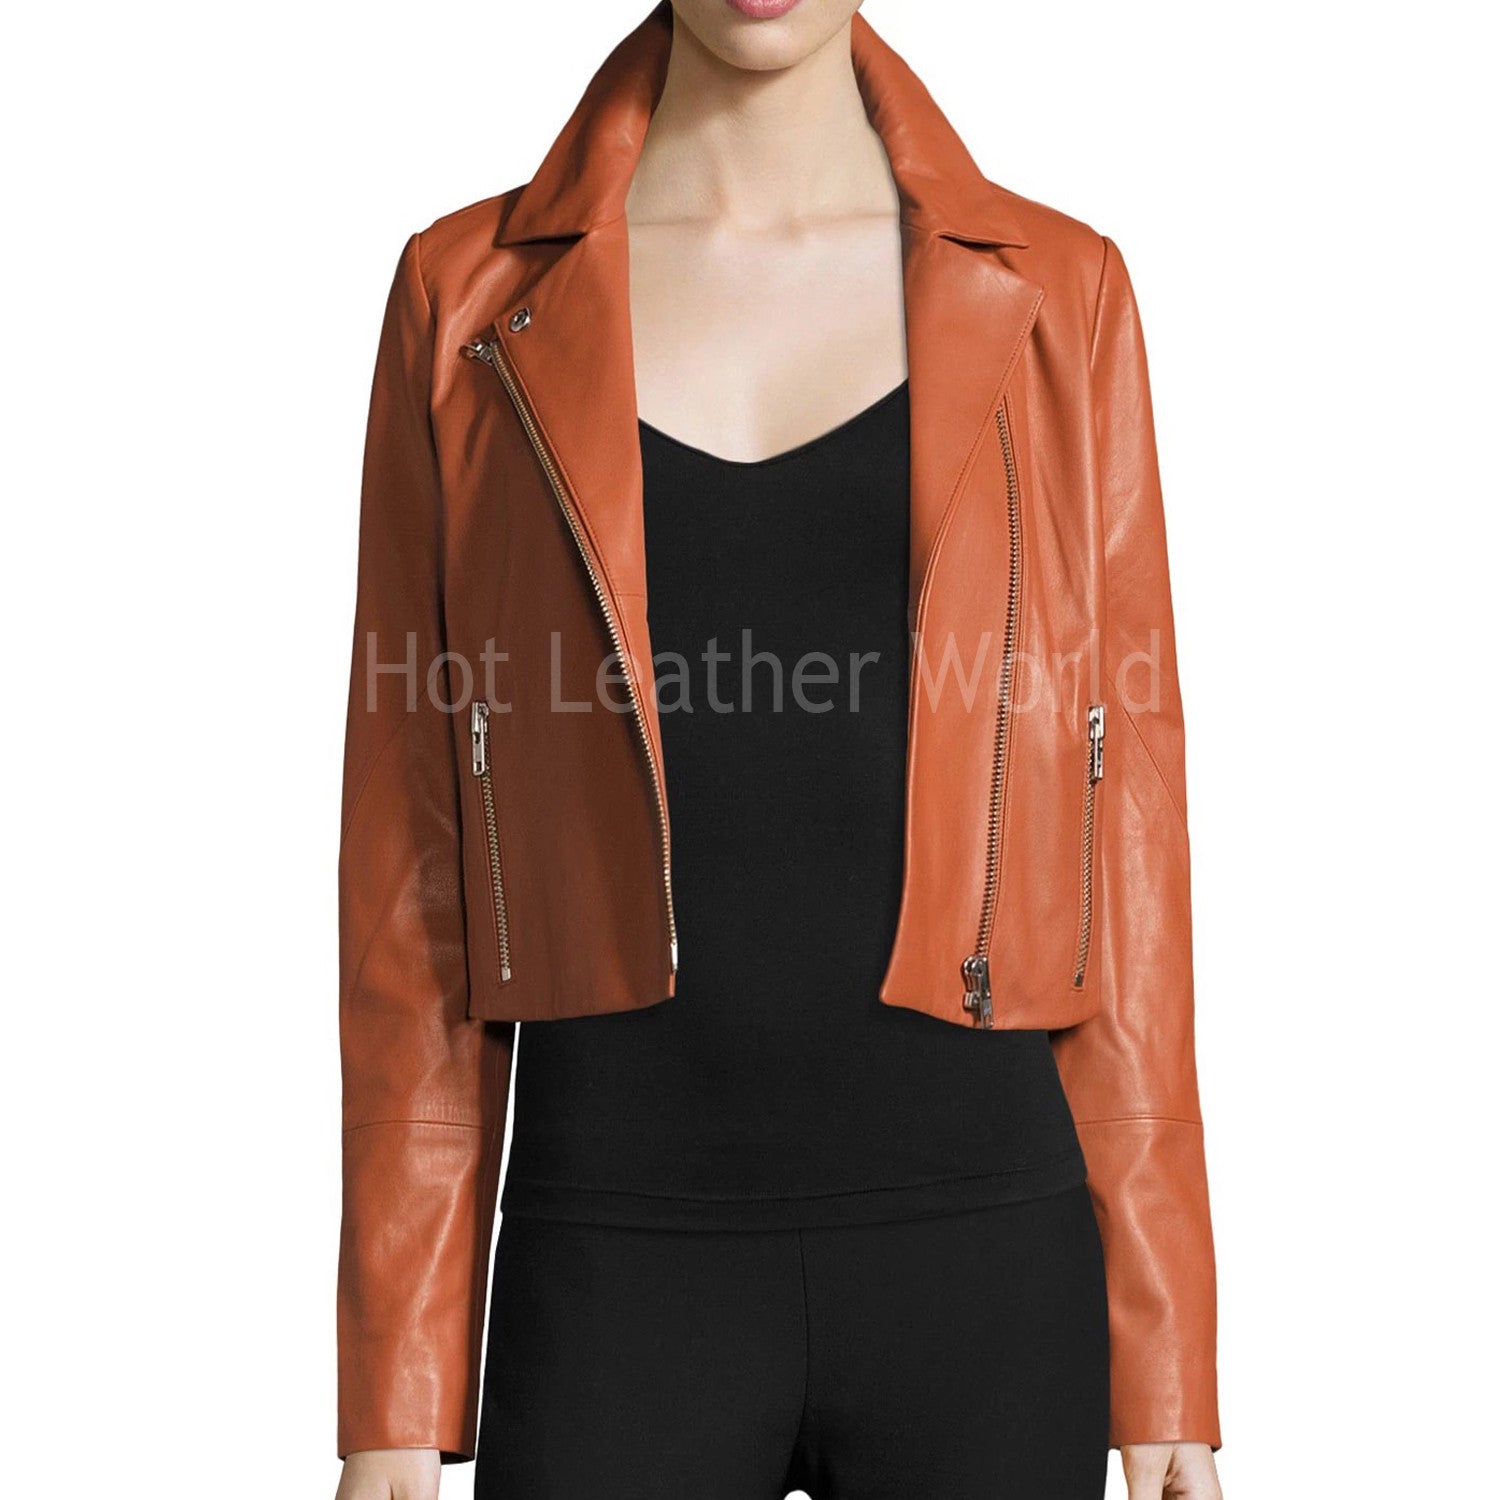 Cropped  Leather Jacket For Women -  HOTLEATHERWORLD